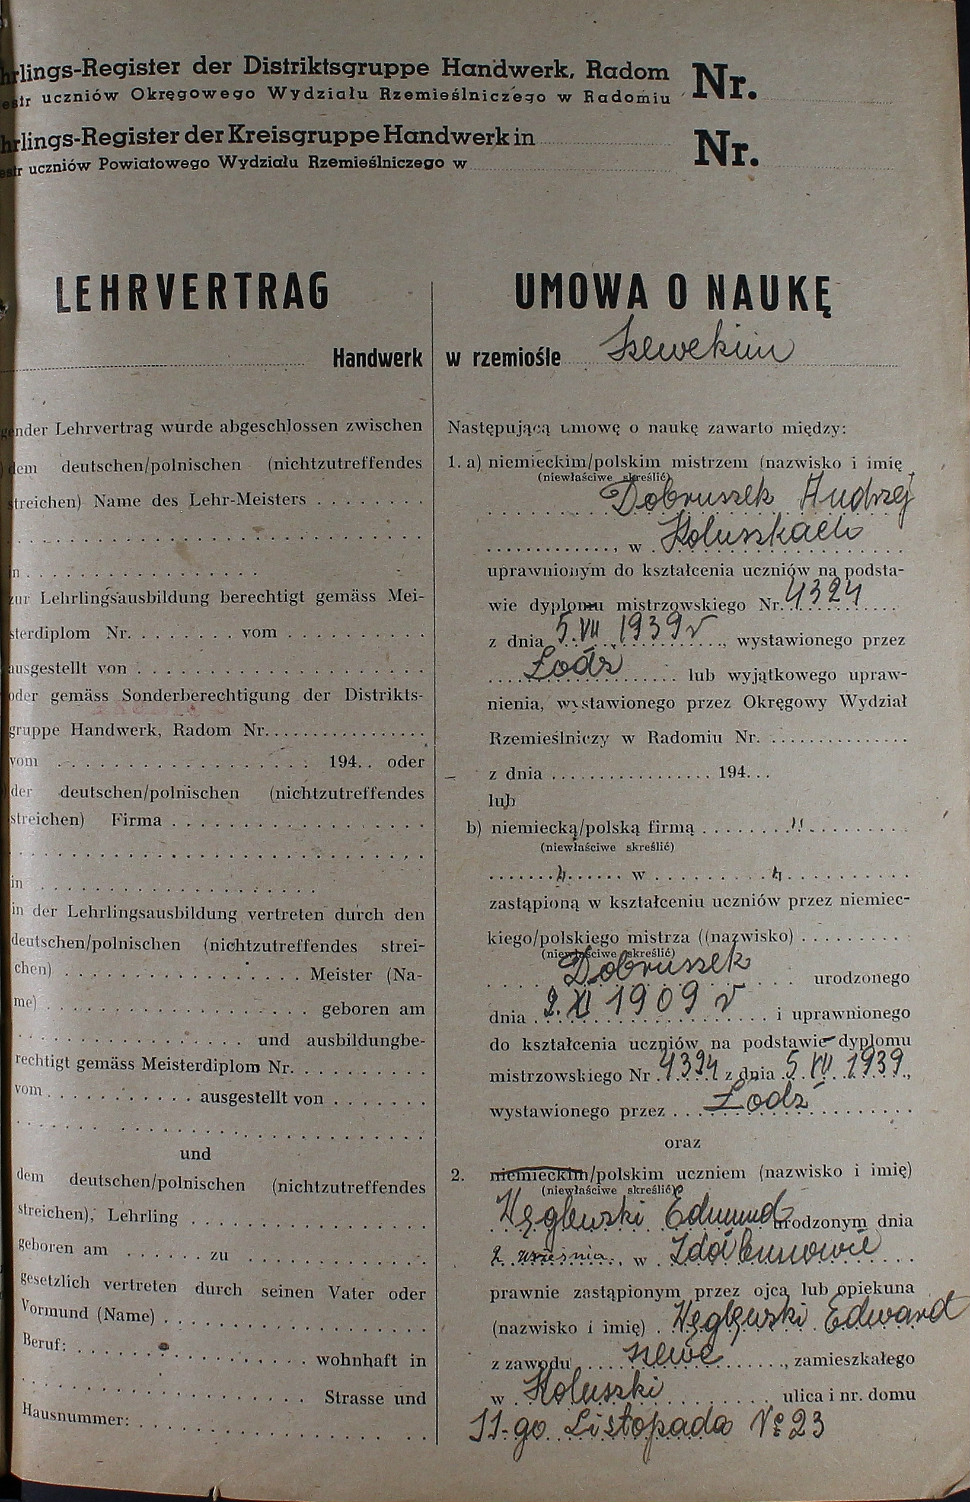 Umowa o naukę w rzemiośle, 1942